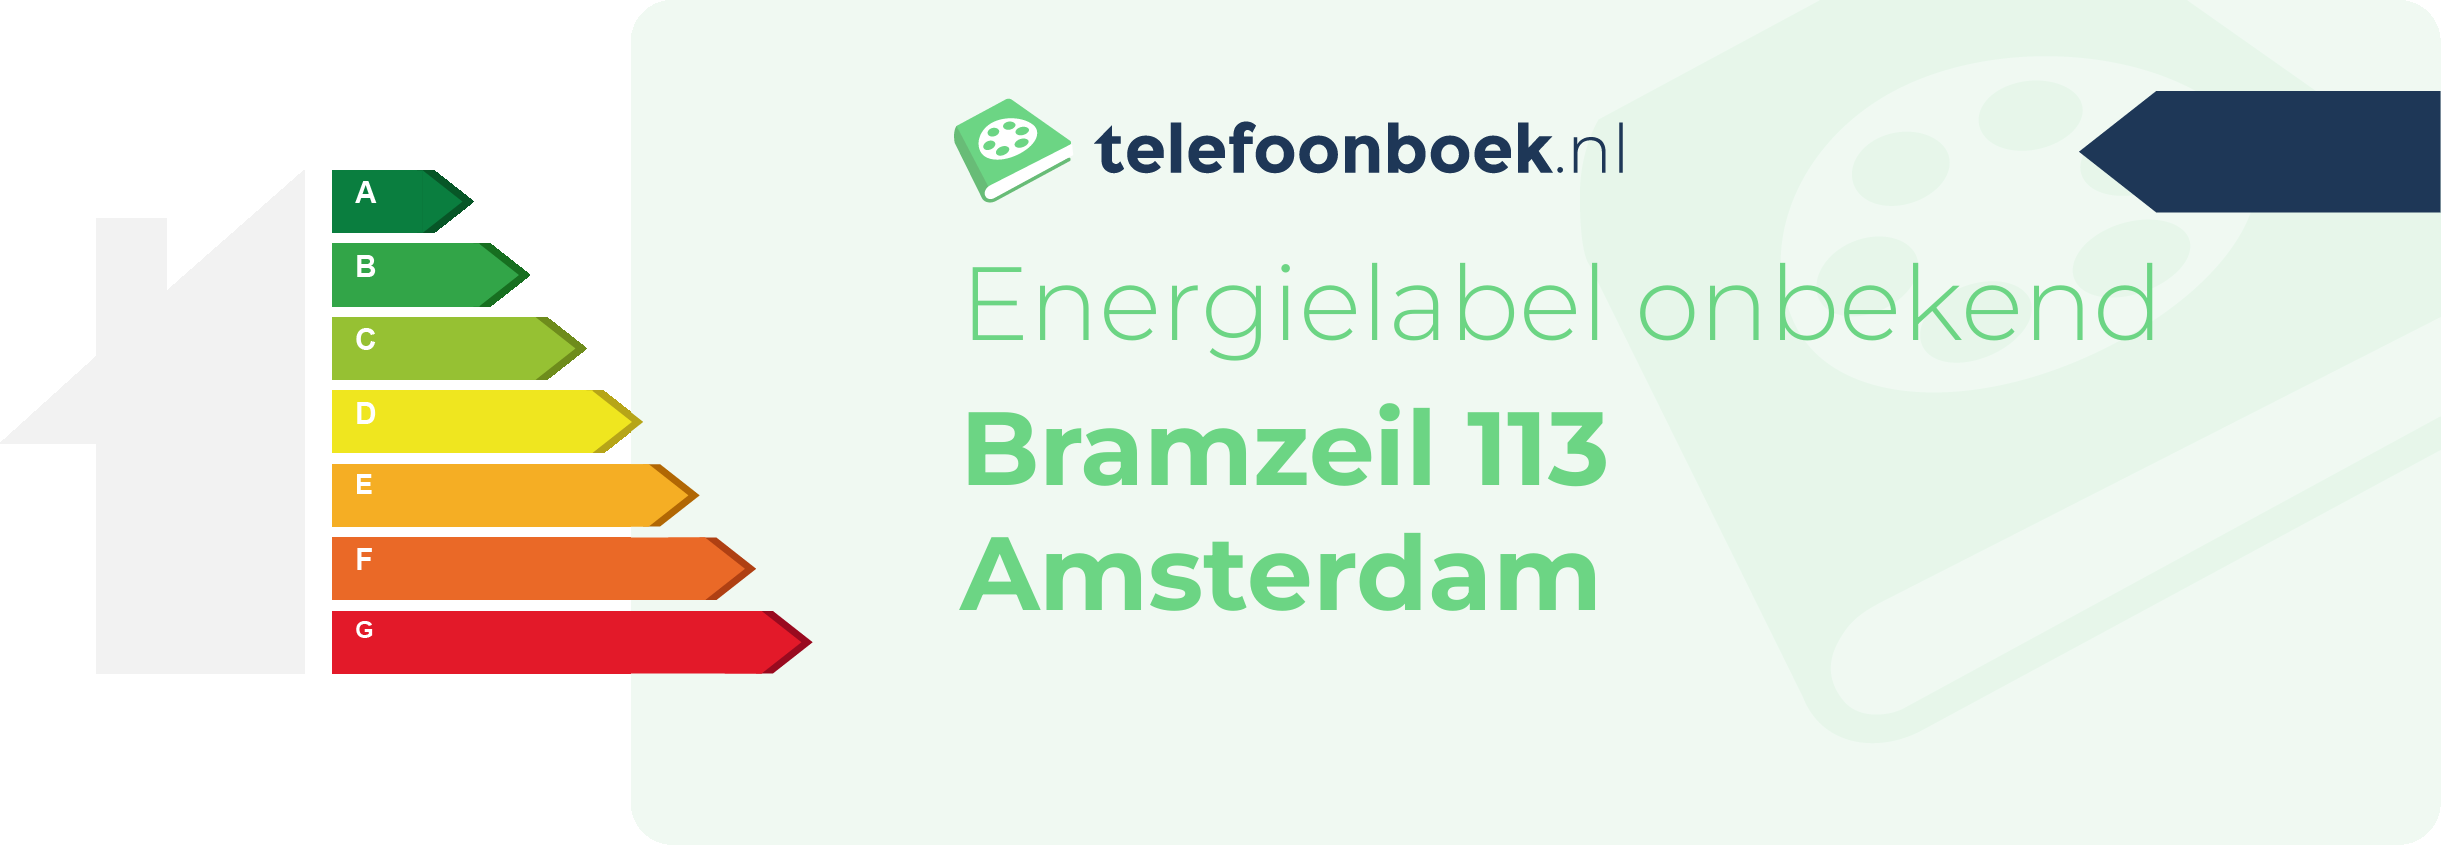 Energielabel Bramzeil 113 Amsterdam